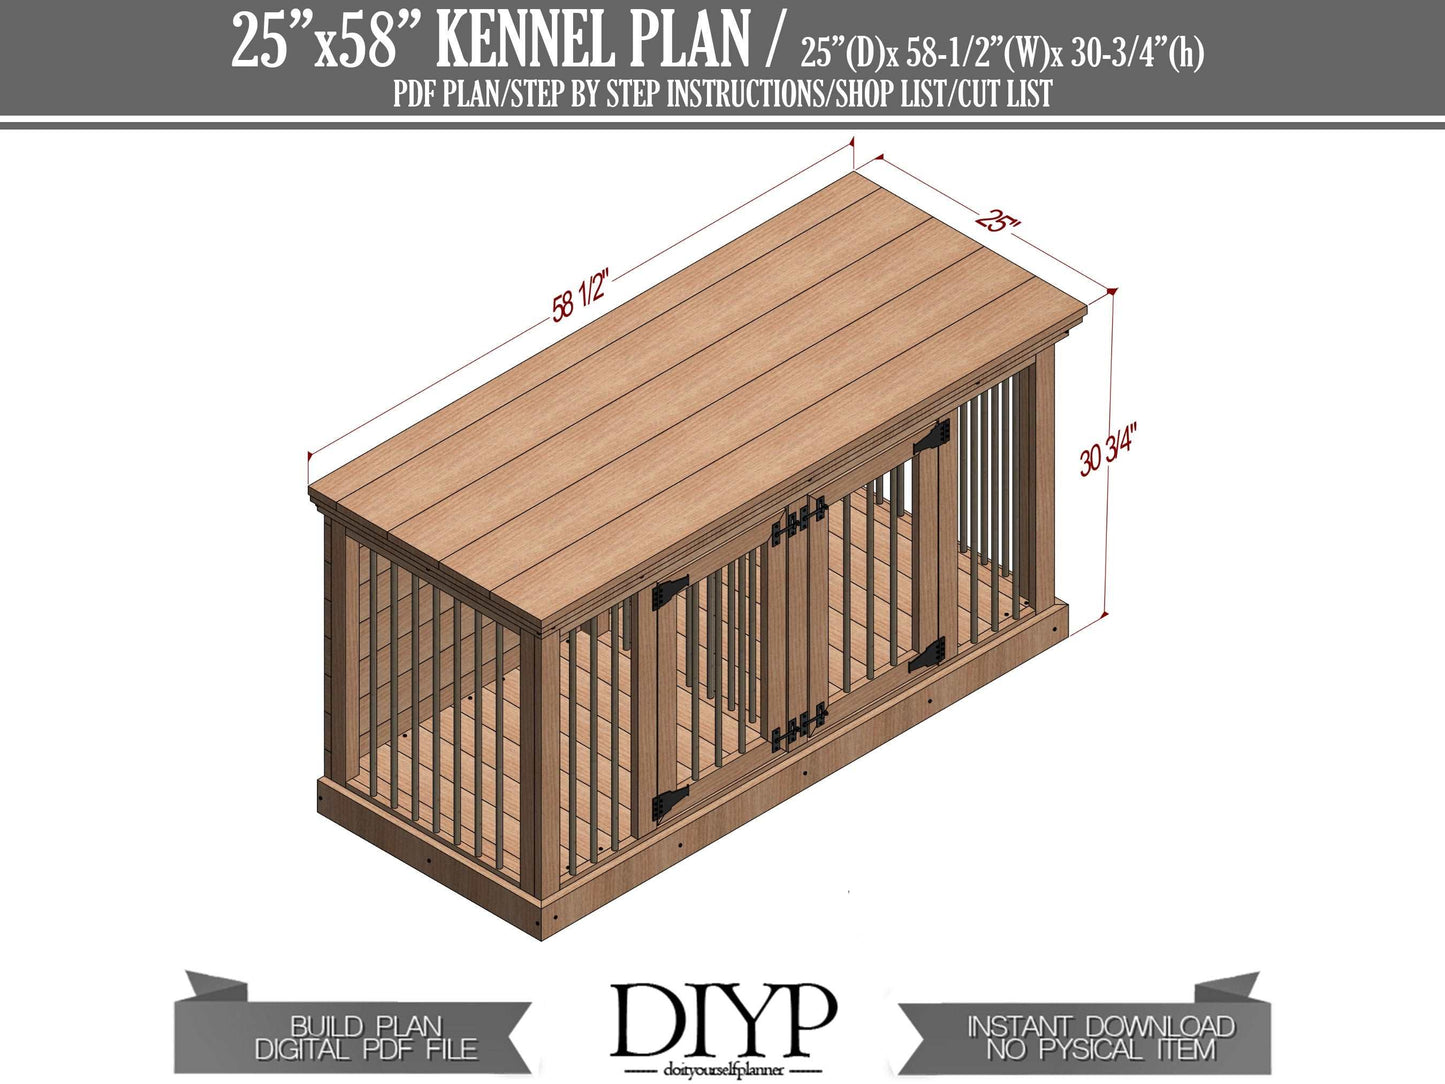 Diy dog crate plans - Dog cage build plan - Wooden Dog House - Dog kennel plans- 25x58